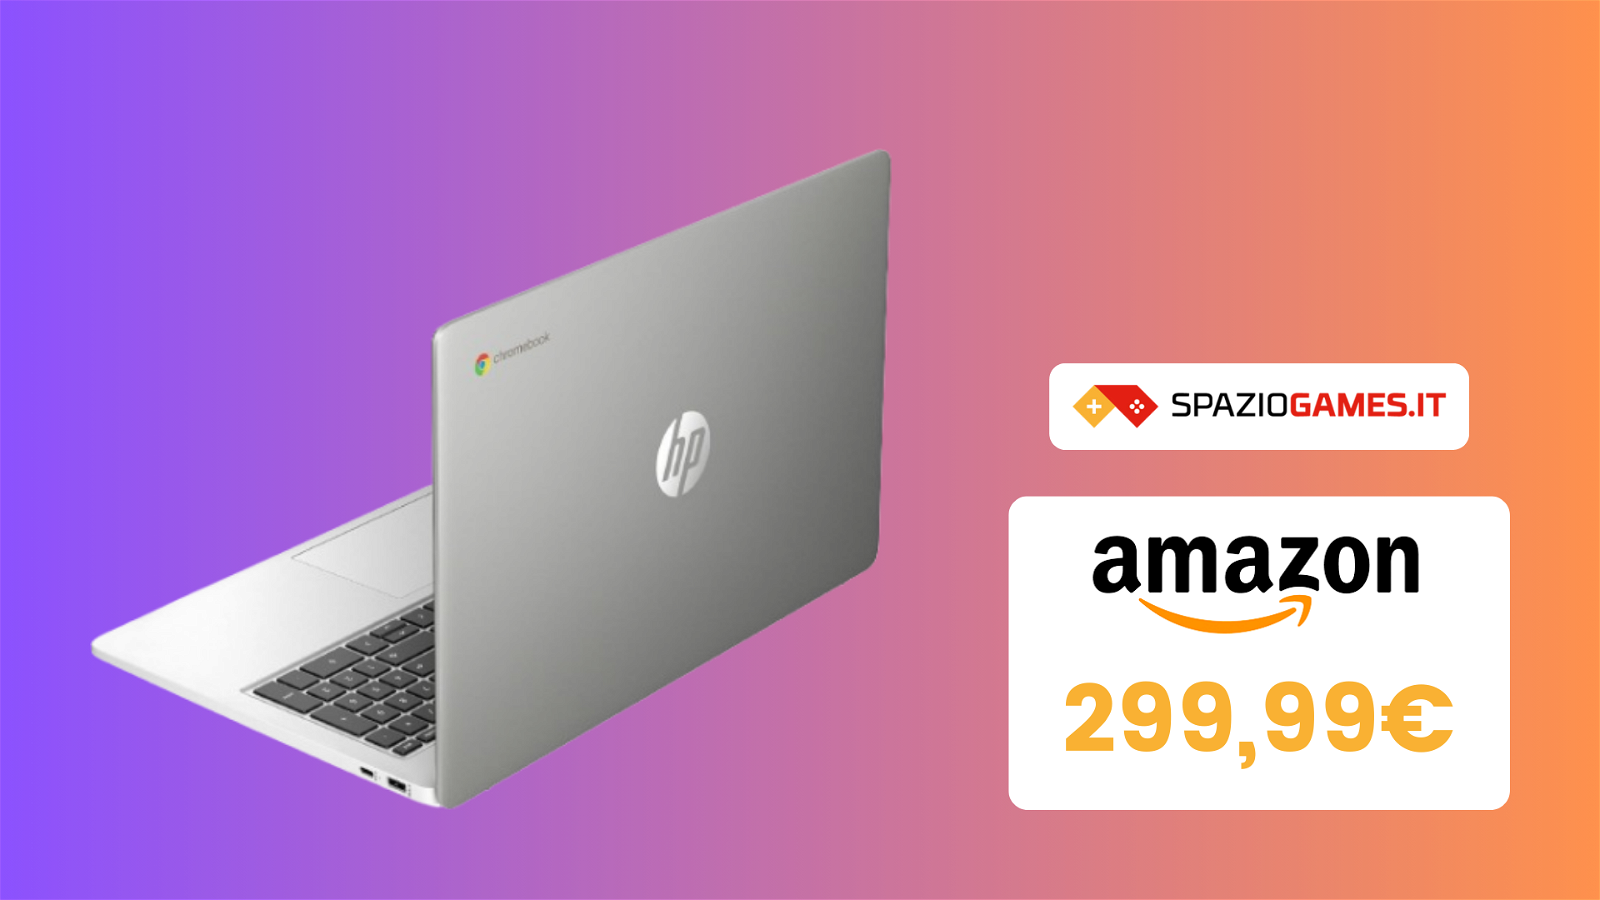 WOW! Chromebook HP a meno di 300€! Un VERO AFFARE!